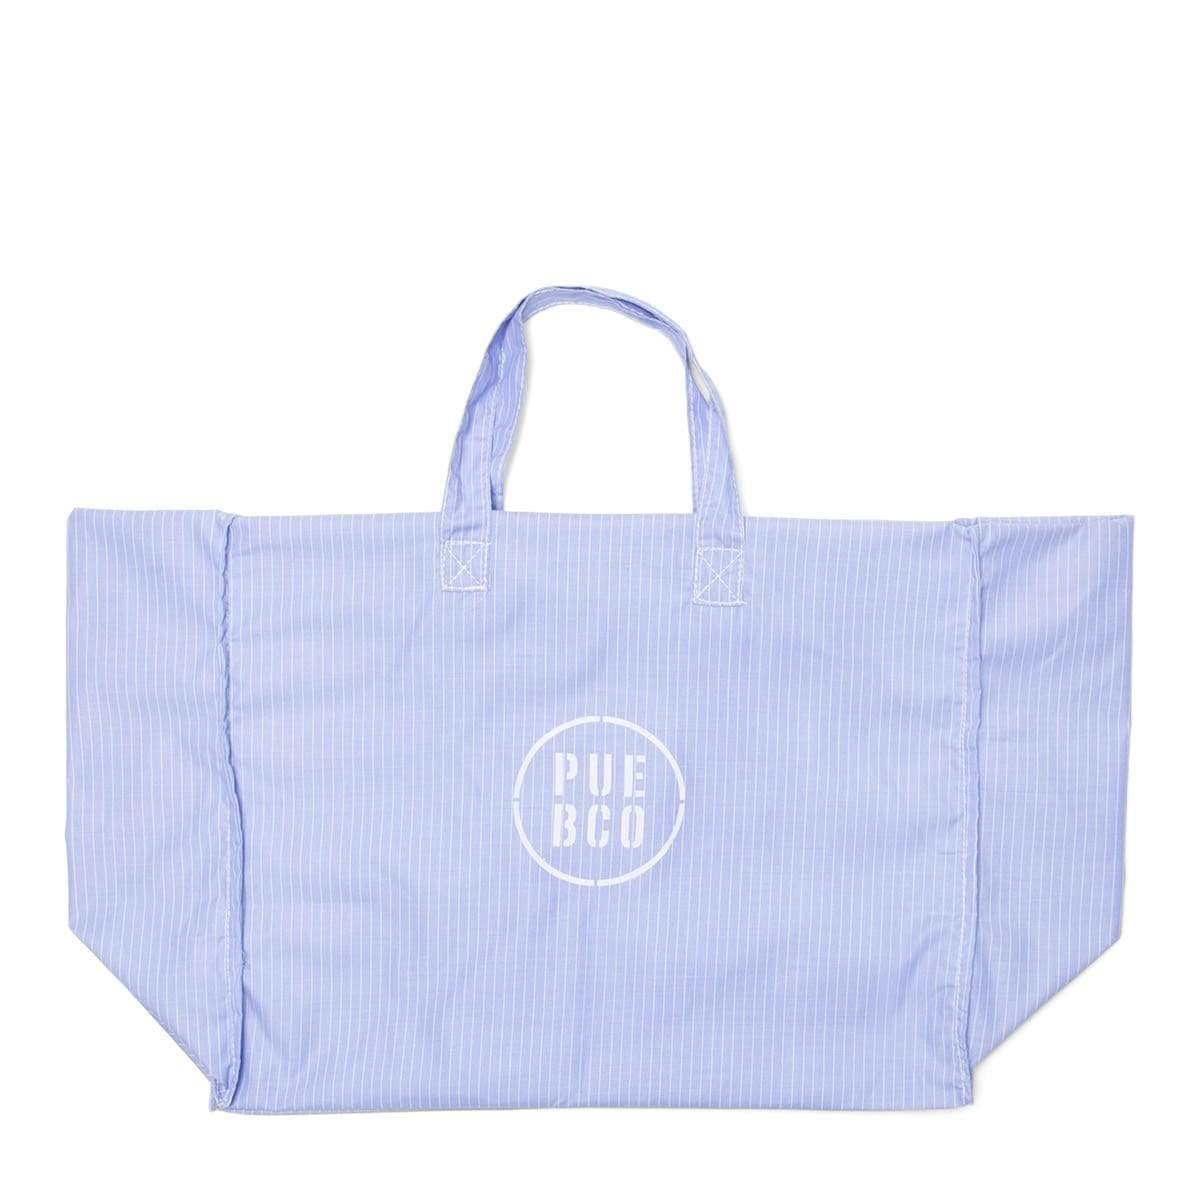 PUEBCO Bags BLUE / O/S SHIRT FABRIC BAG